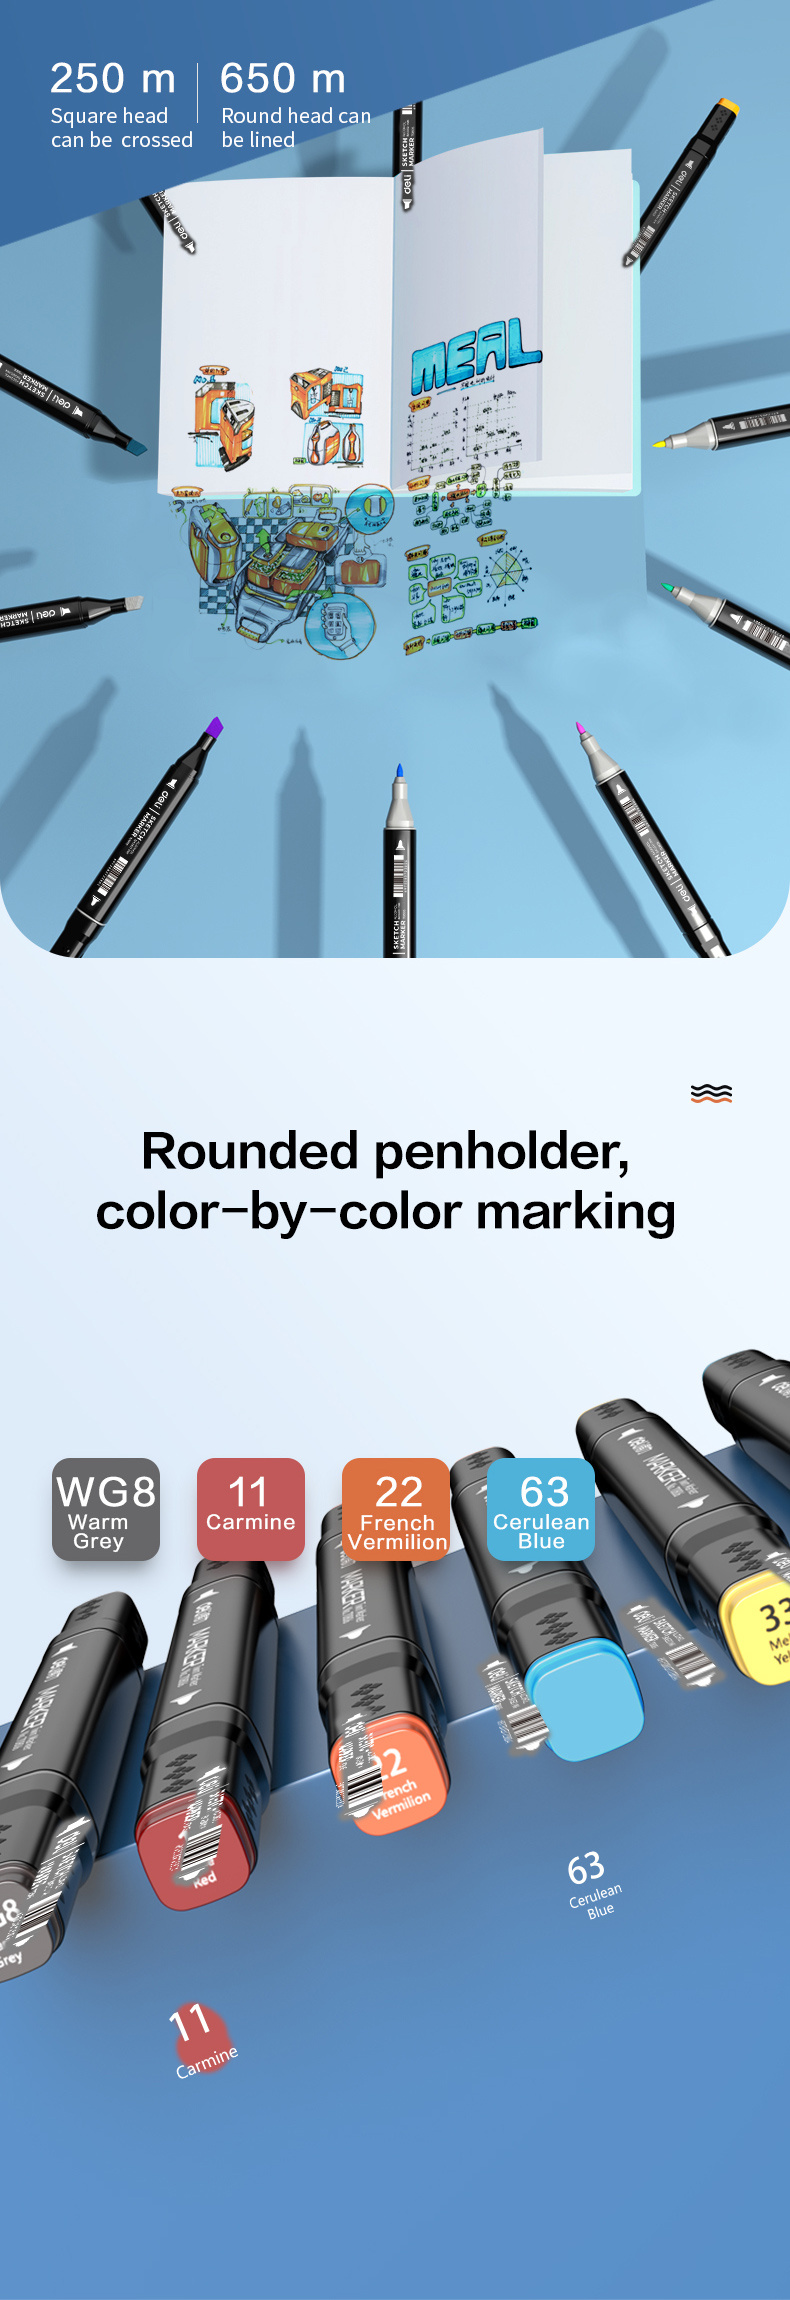 Deli 30/40/60 Colors Creativity Sketch Marker Double Head - Temu